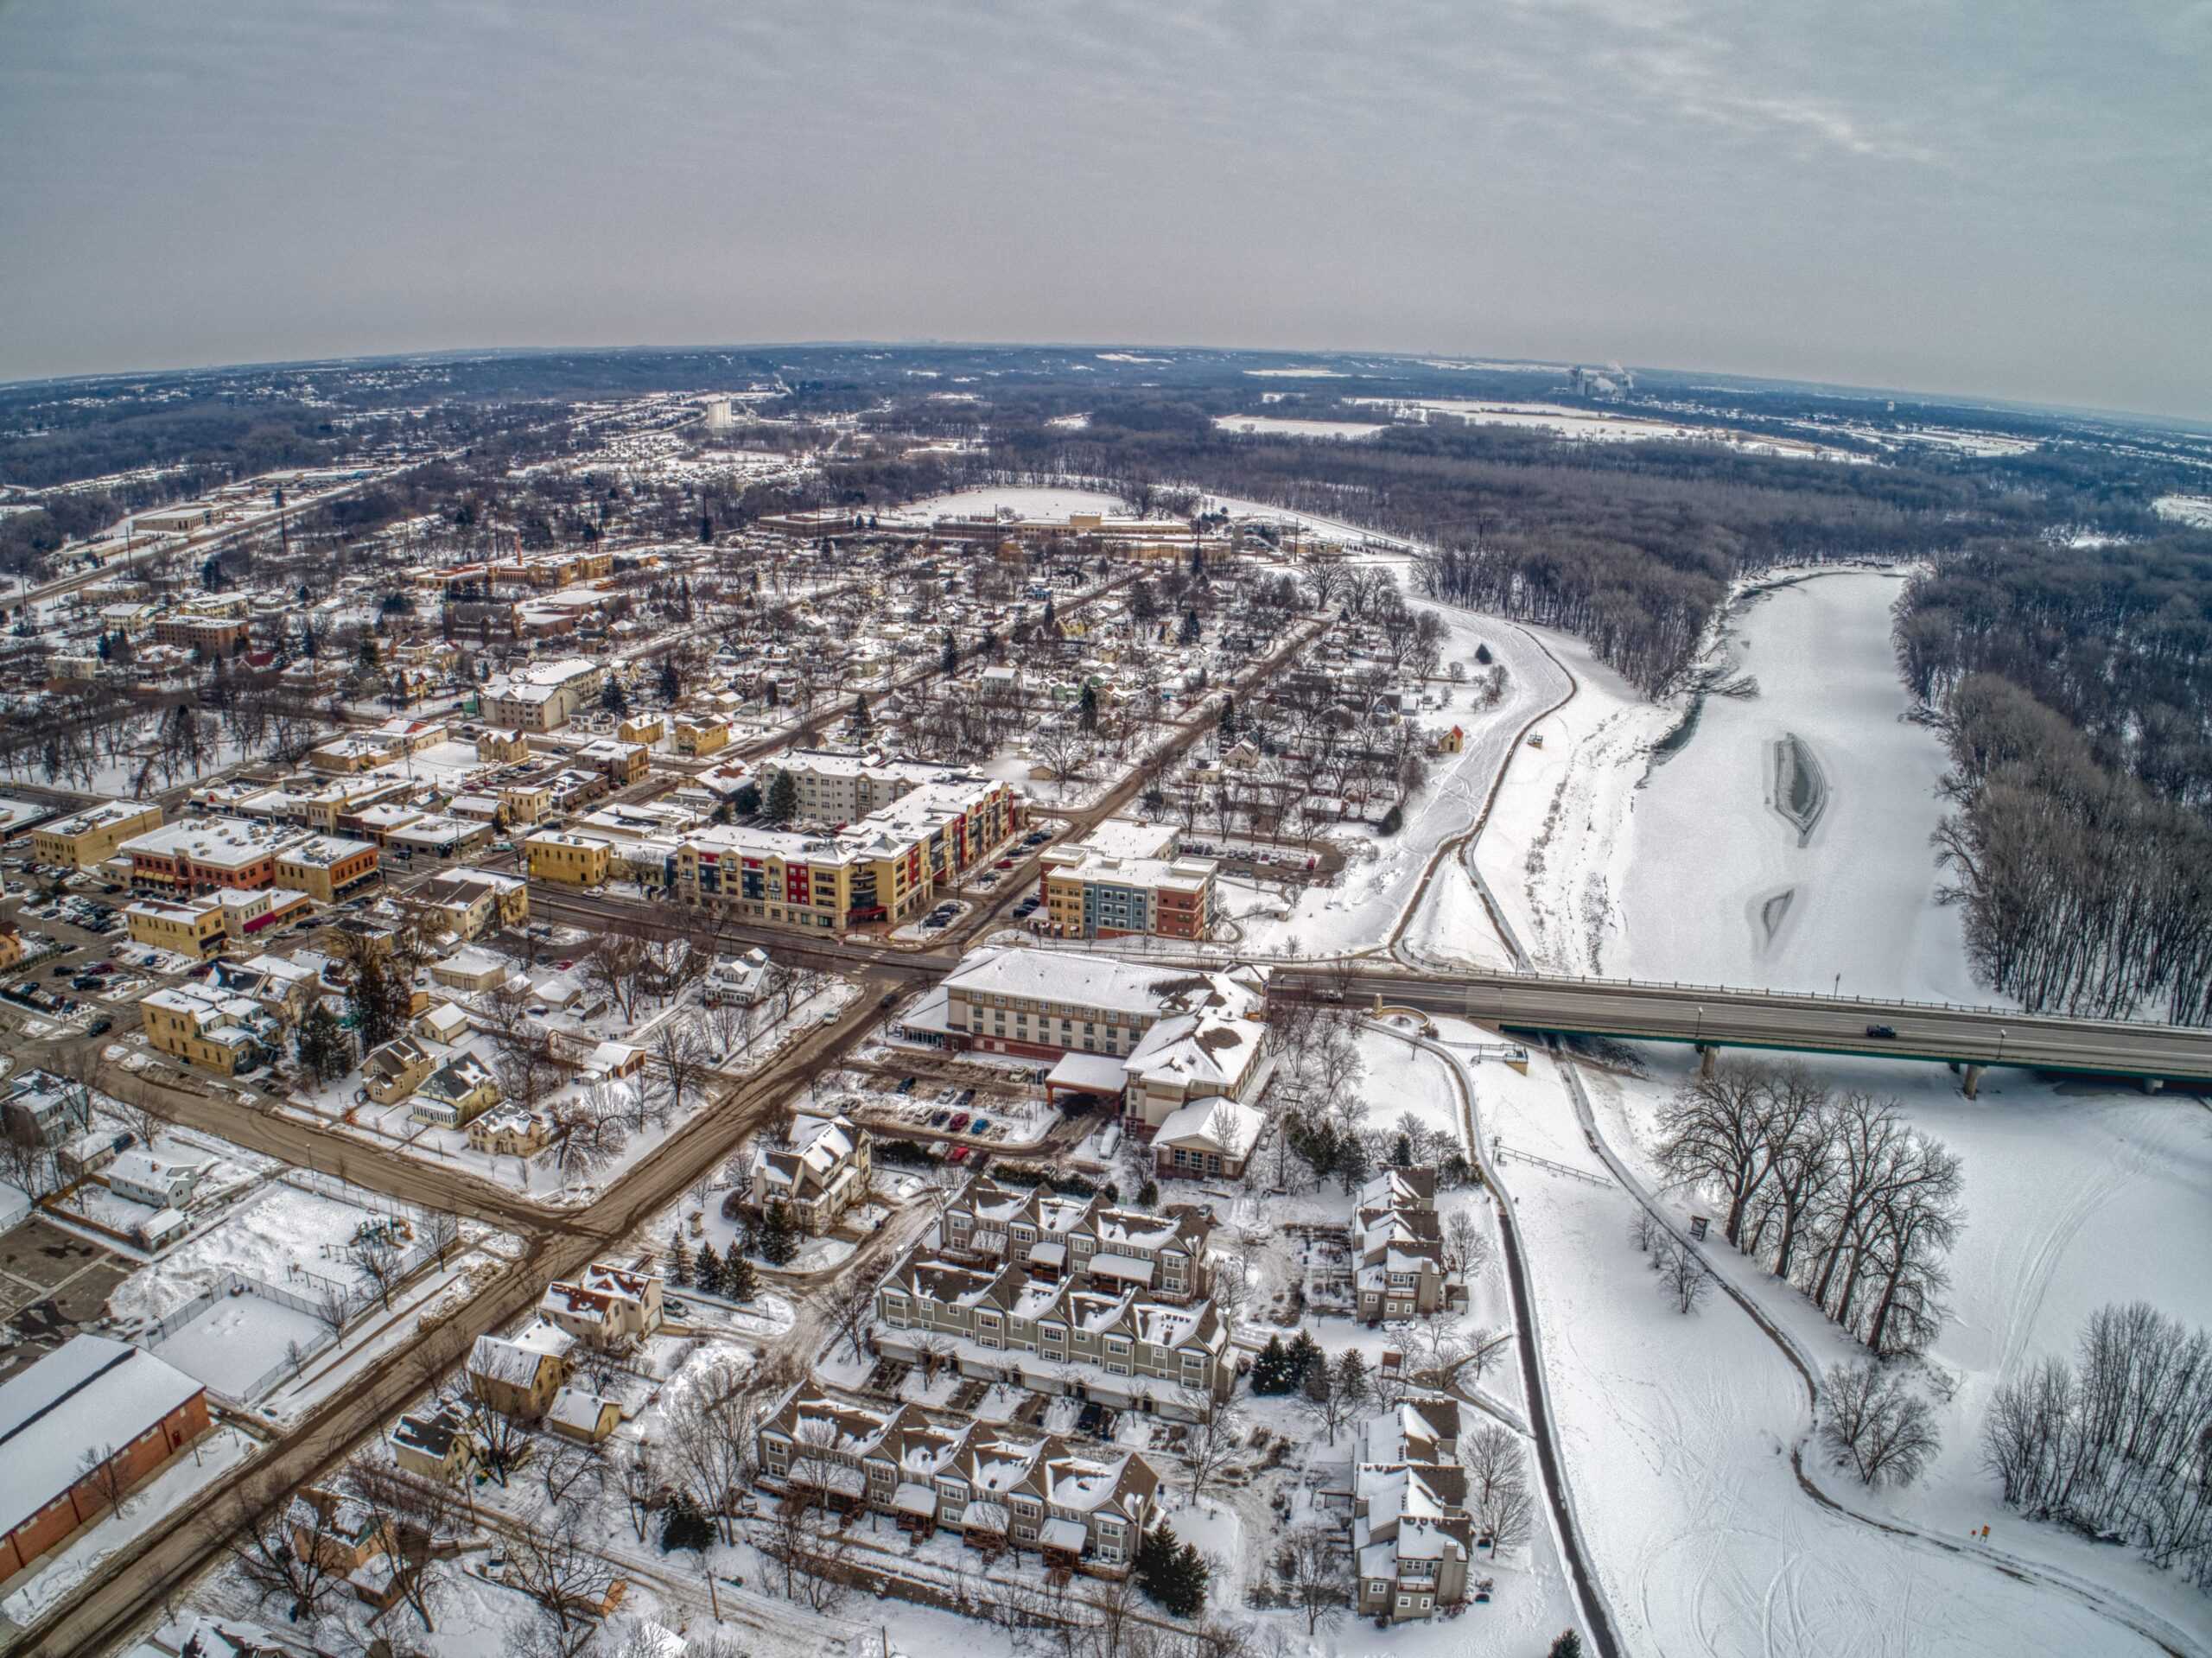 Chaska, Minnesota | Aerial view of the Suburb of Chaska on the Minnesota River